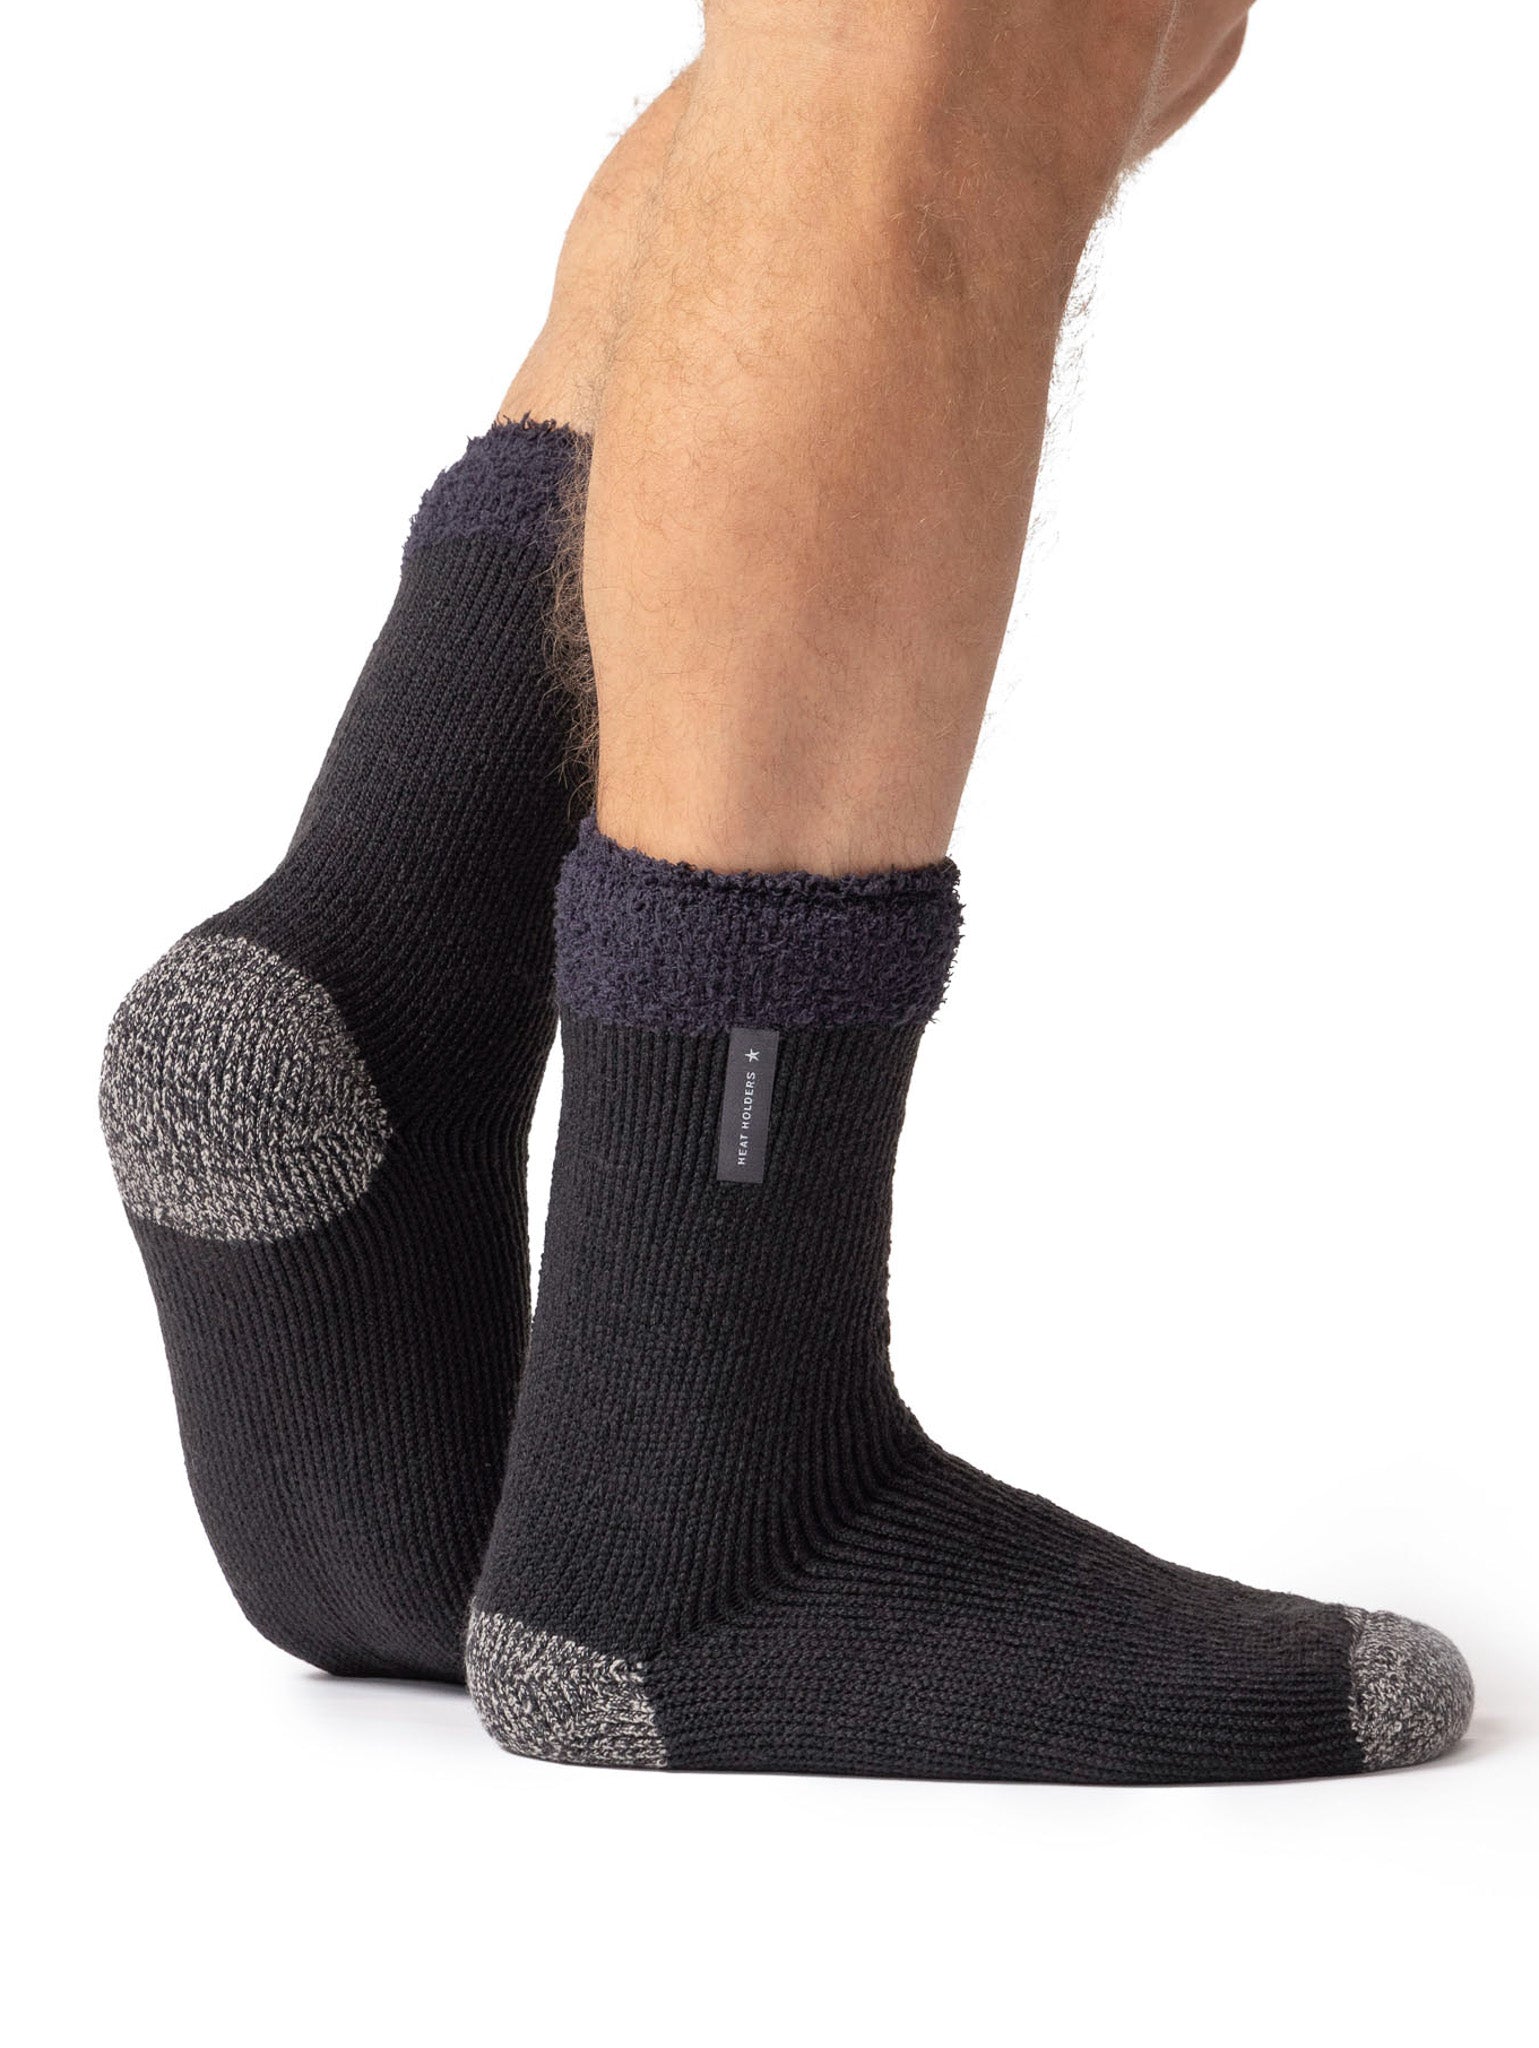 HEAT HOLDERS Lumi Thermal Sleep Socks-Mens 6-11